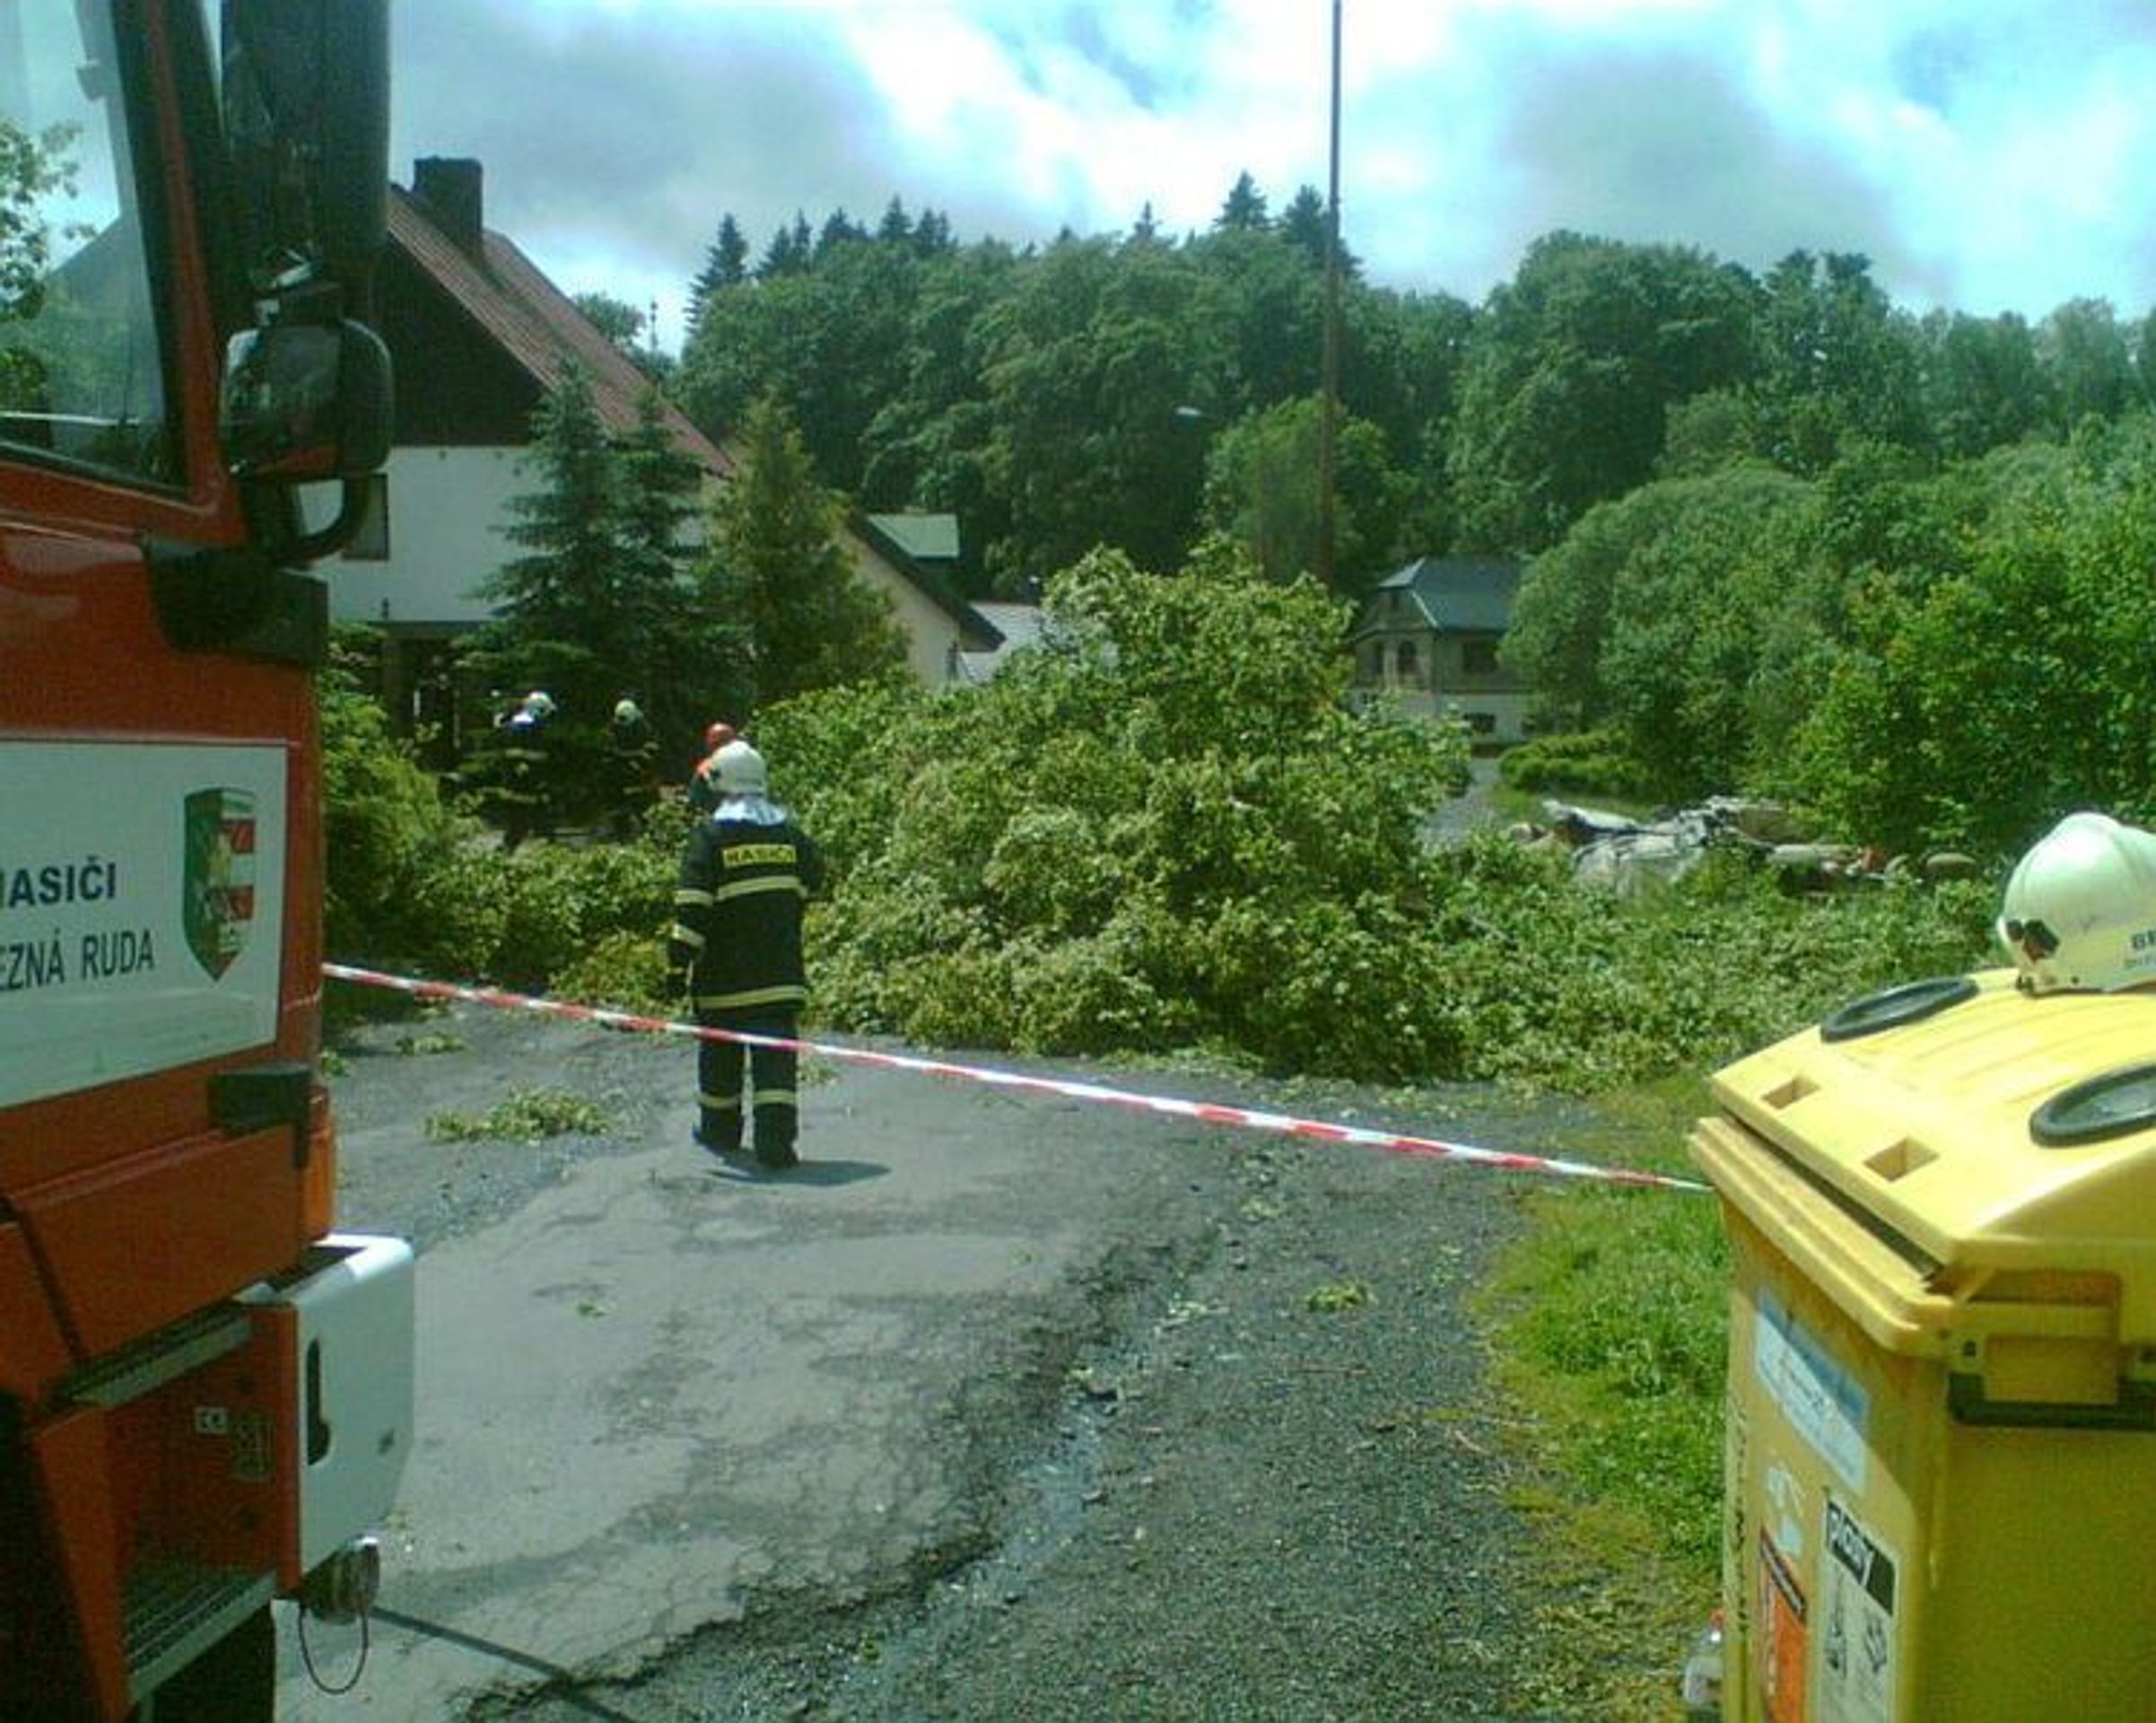 Vítr srazil strom na domek v Železné Rudě - GALERIE: Vichřice srazila strom na domek v Železné Rudě (2/5)